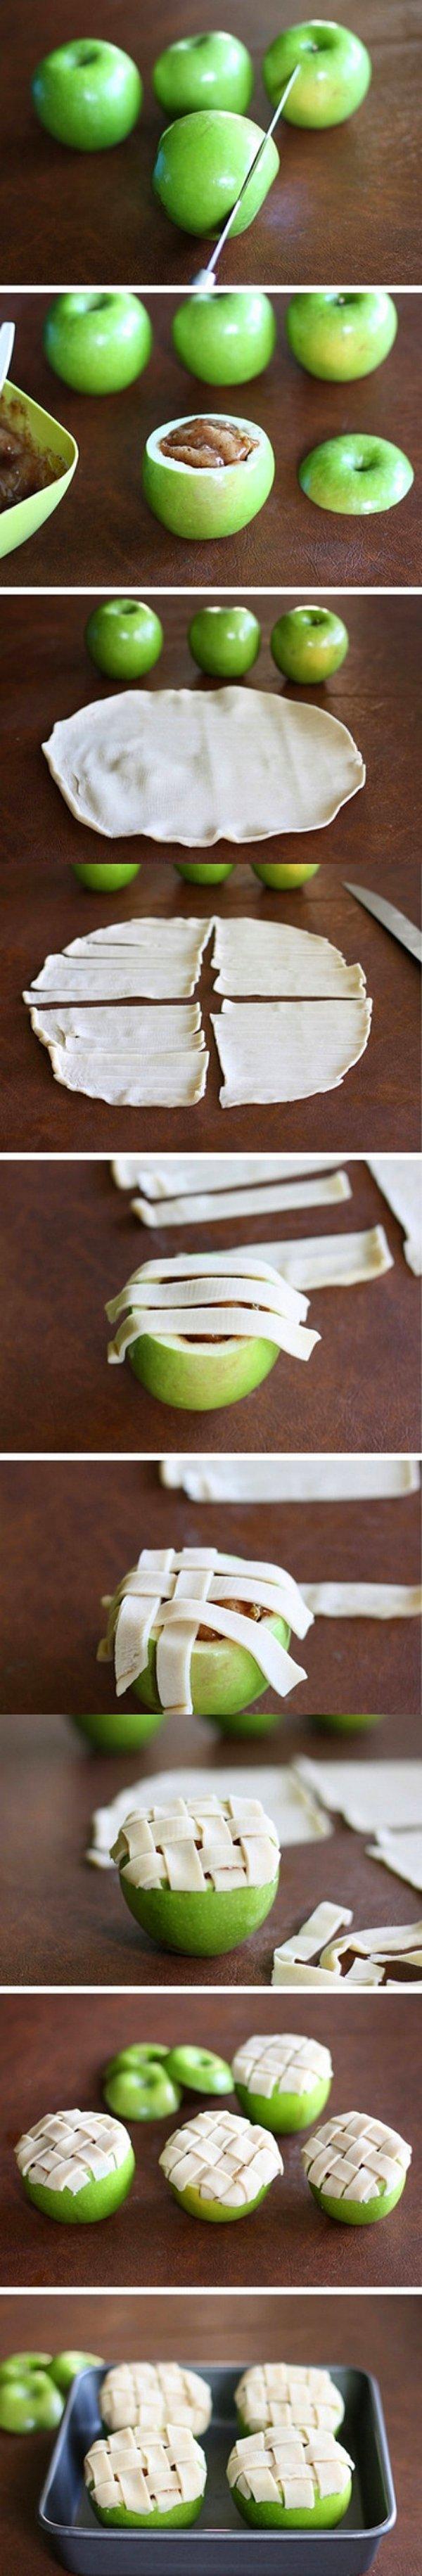 1. Mesela elmalı pay yapmak için elmanın kendisini kullanabilirsiniz!